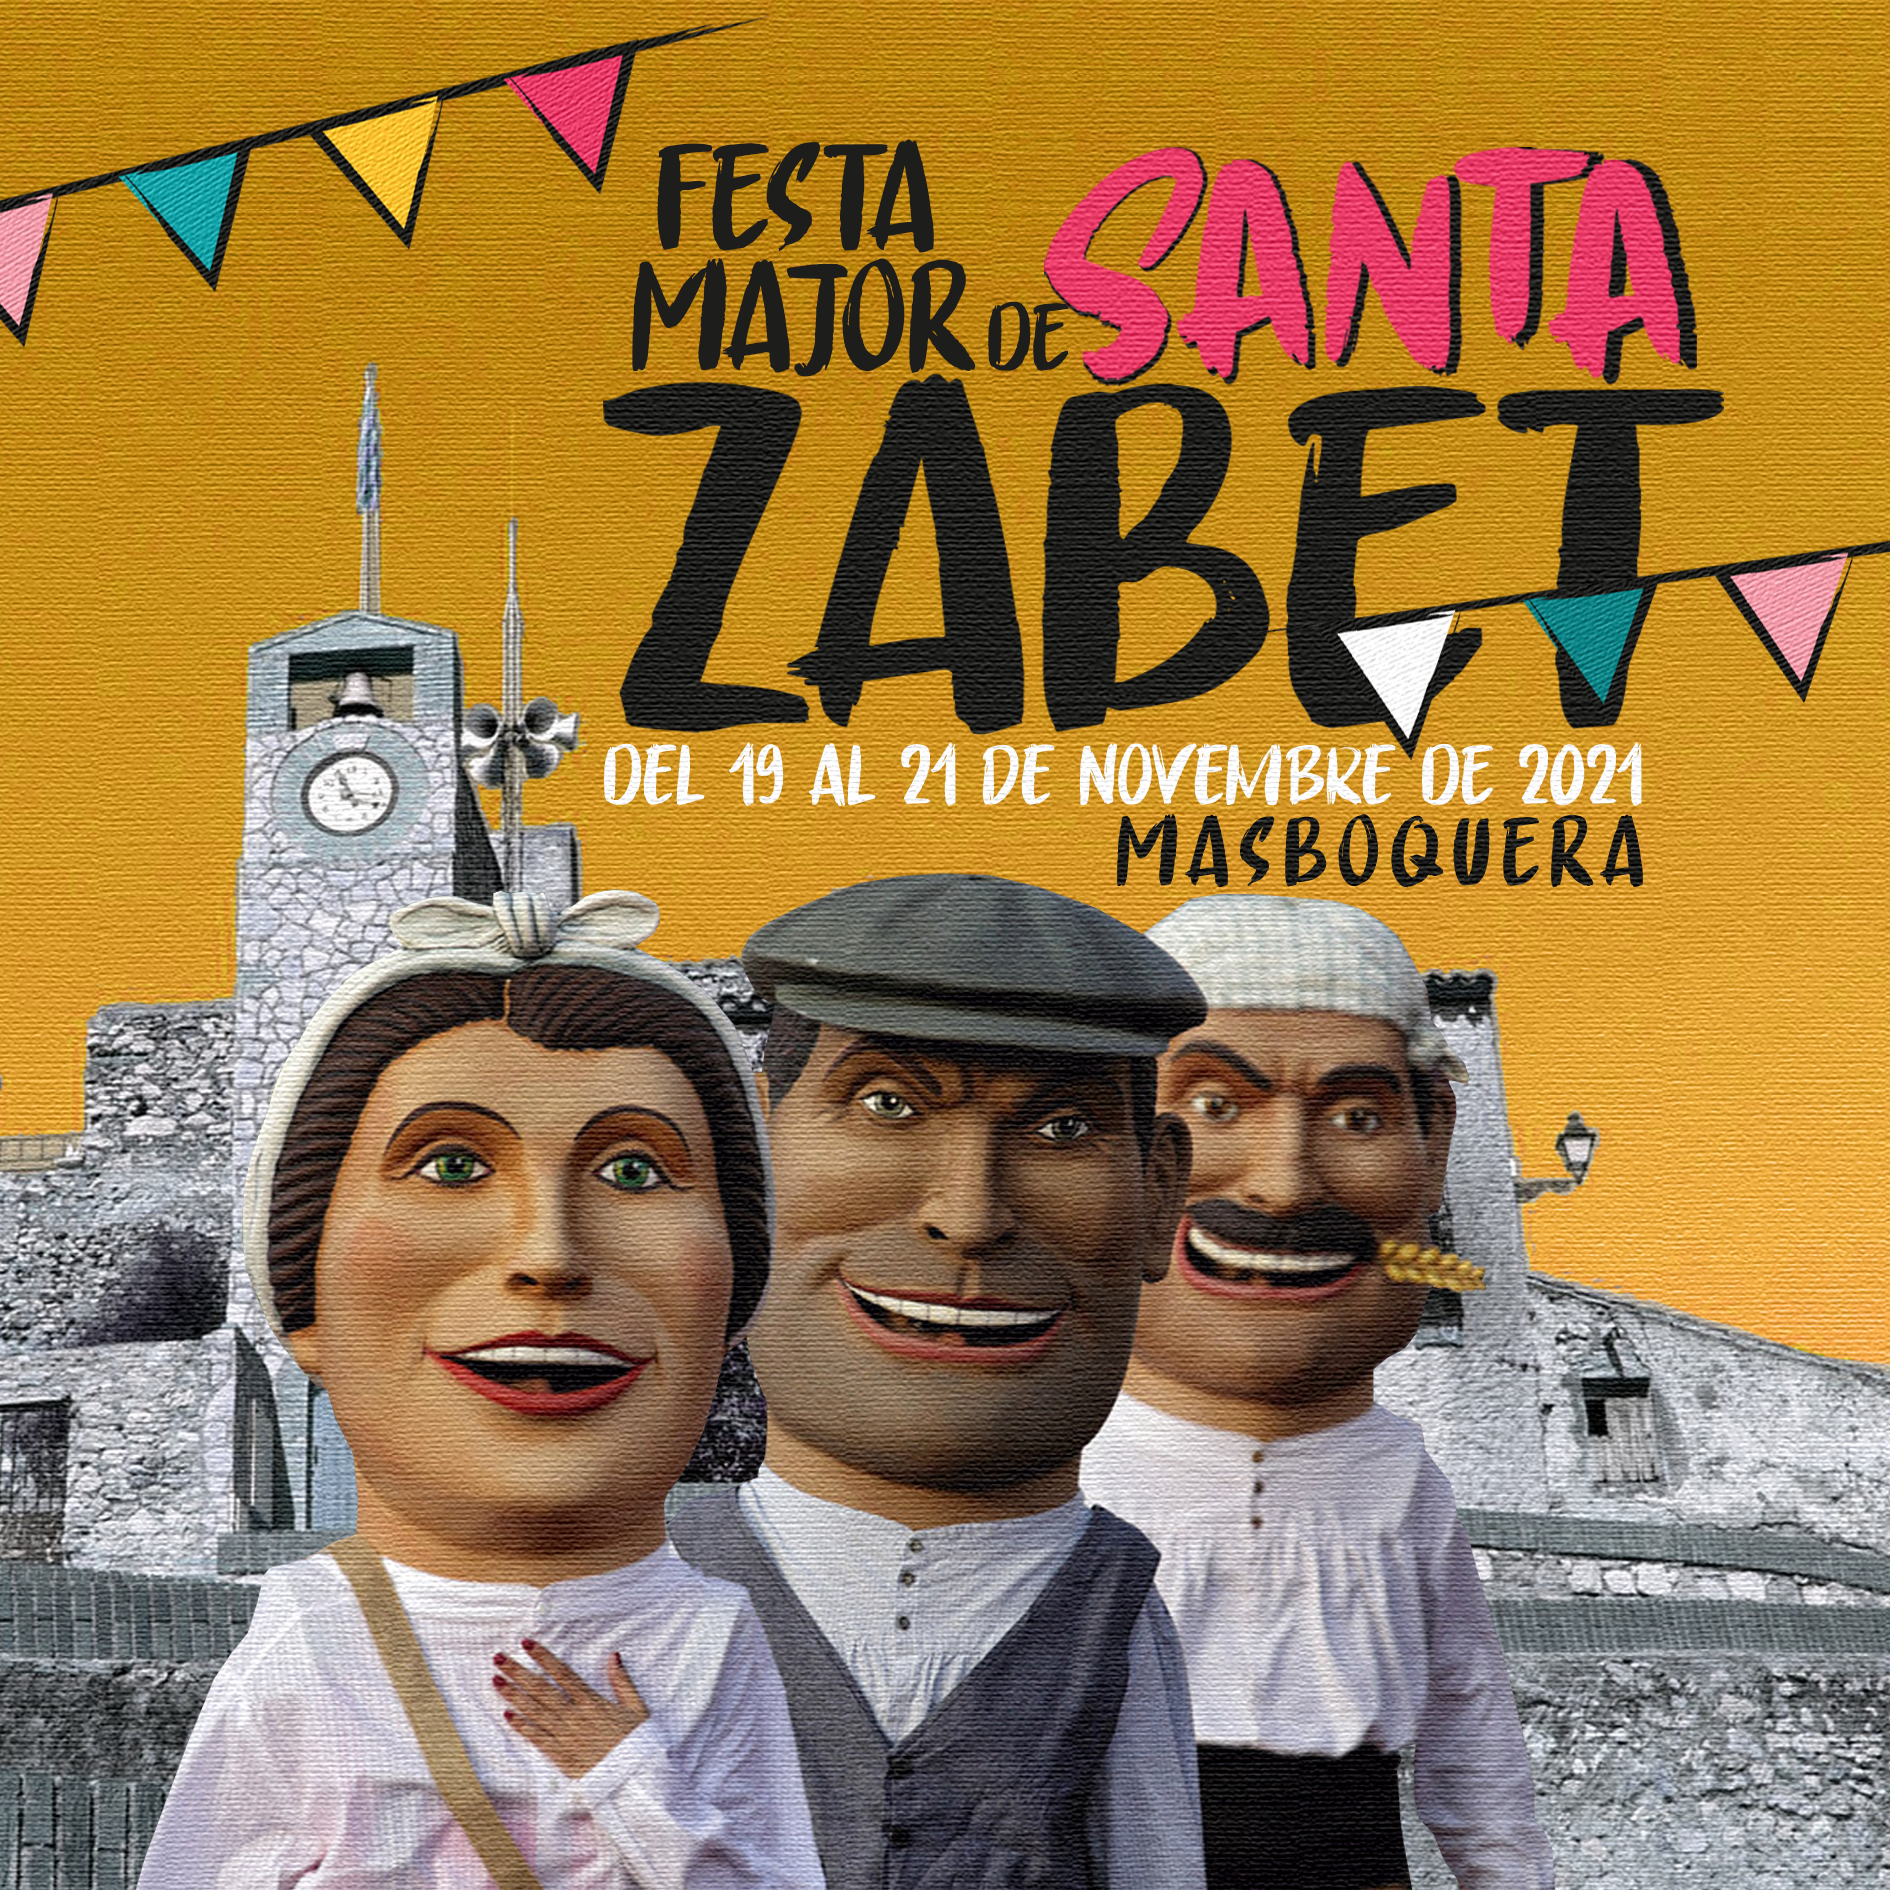 Gairebé una vintena d’actes per celebrar la Festa Major de Masboquera, del 19 al 21 de novembre